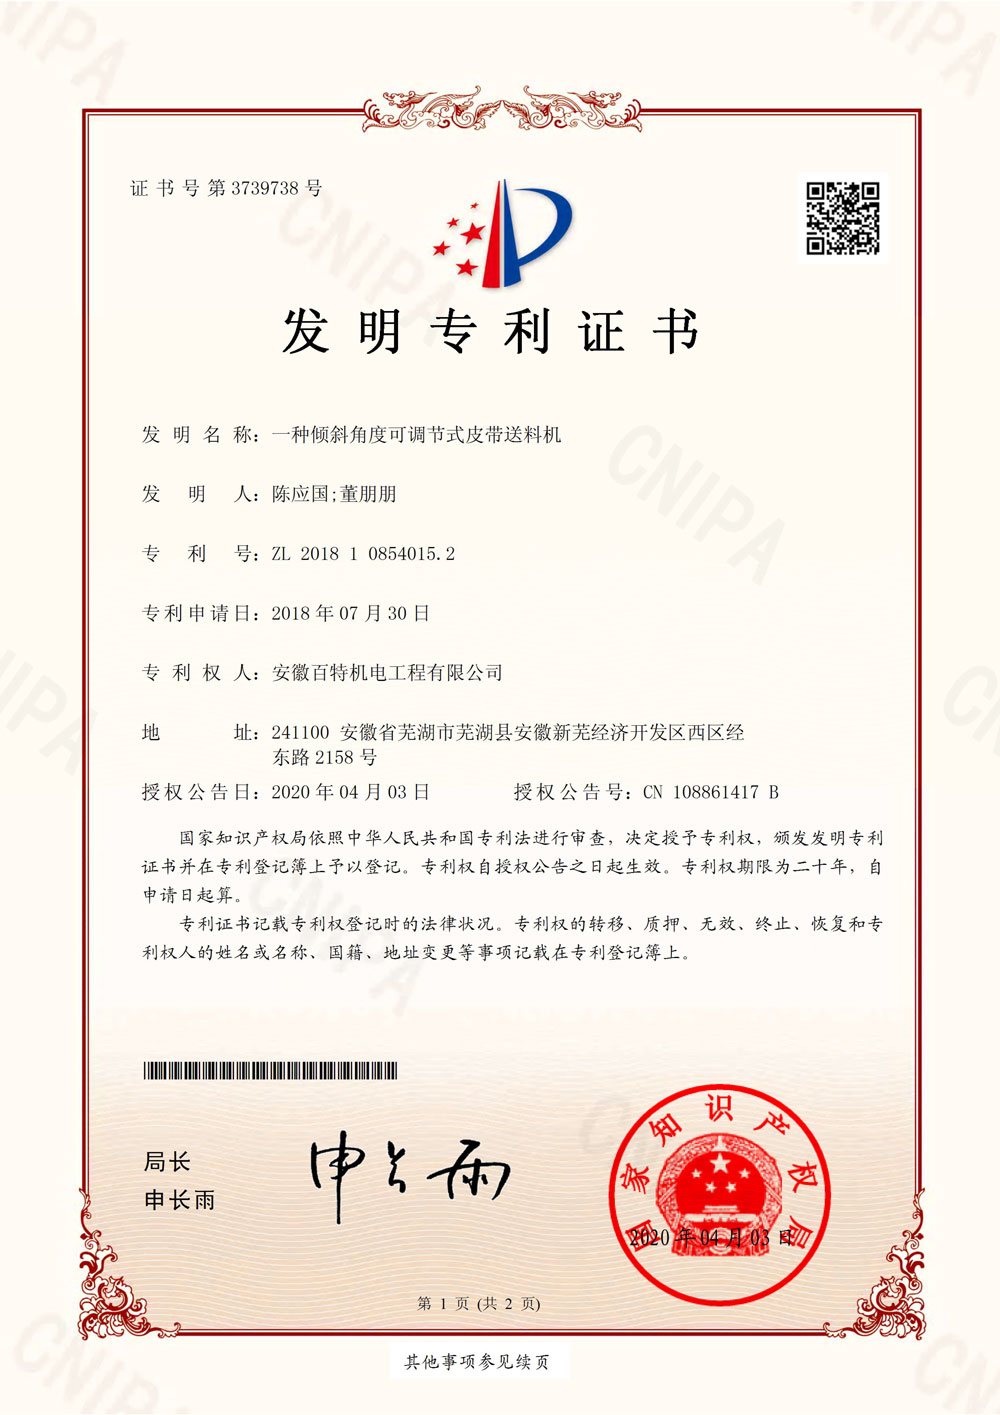 扬州百特第7件发明专利证书-1